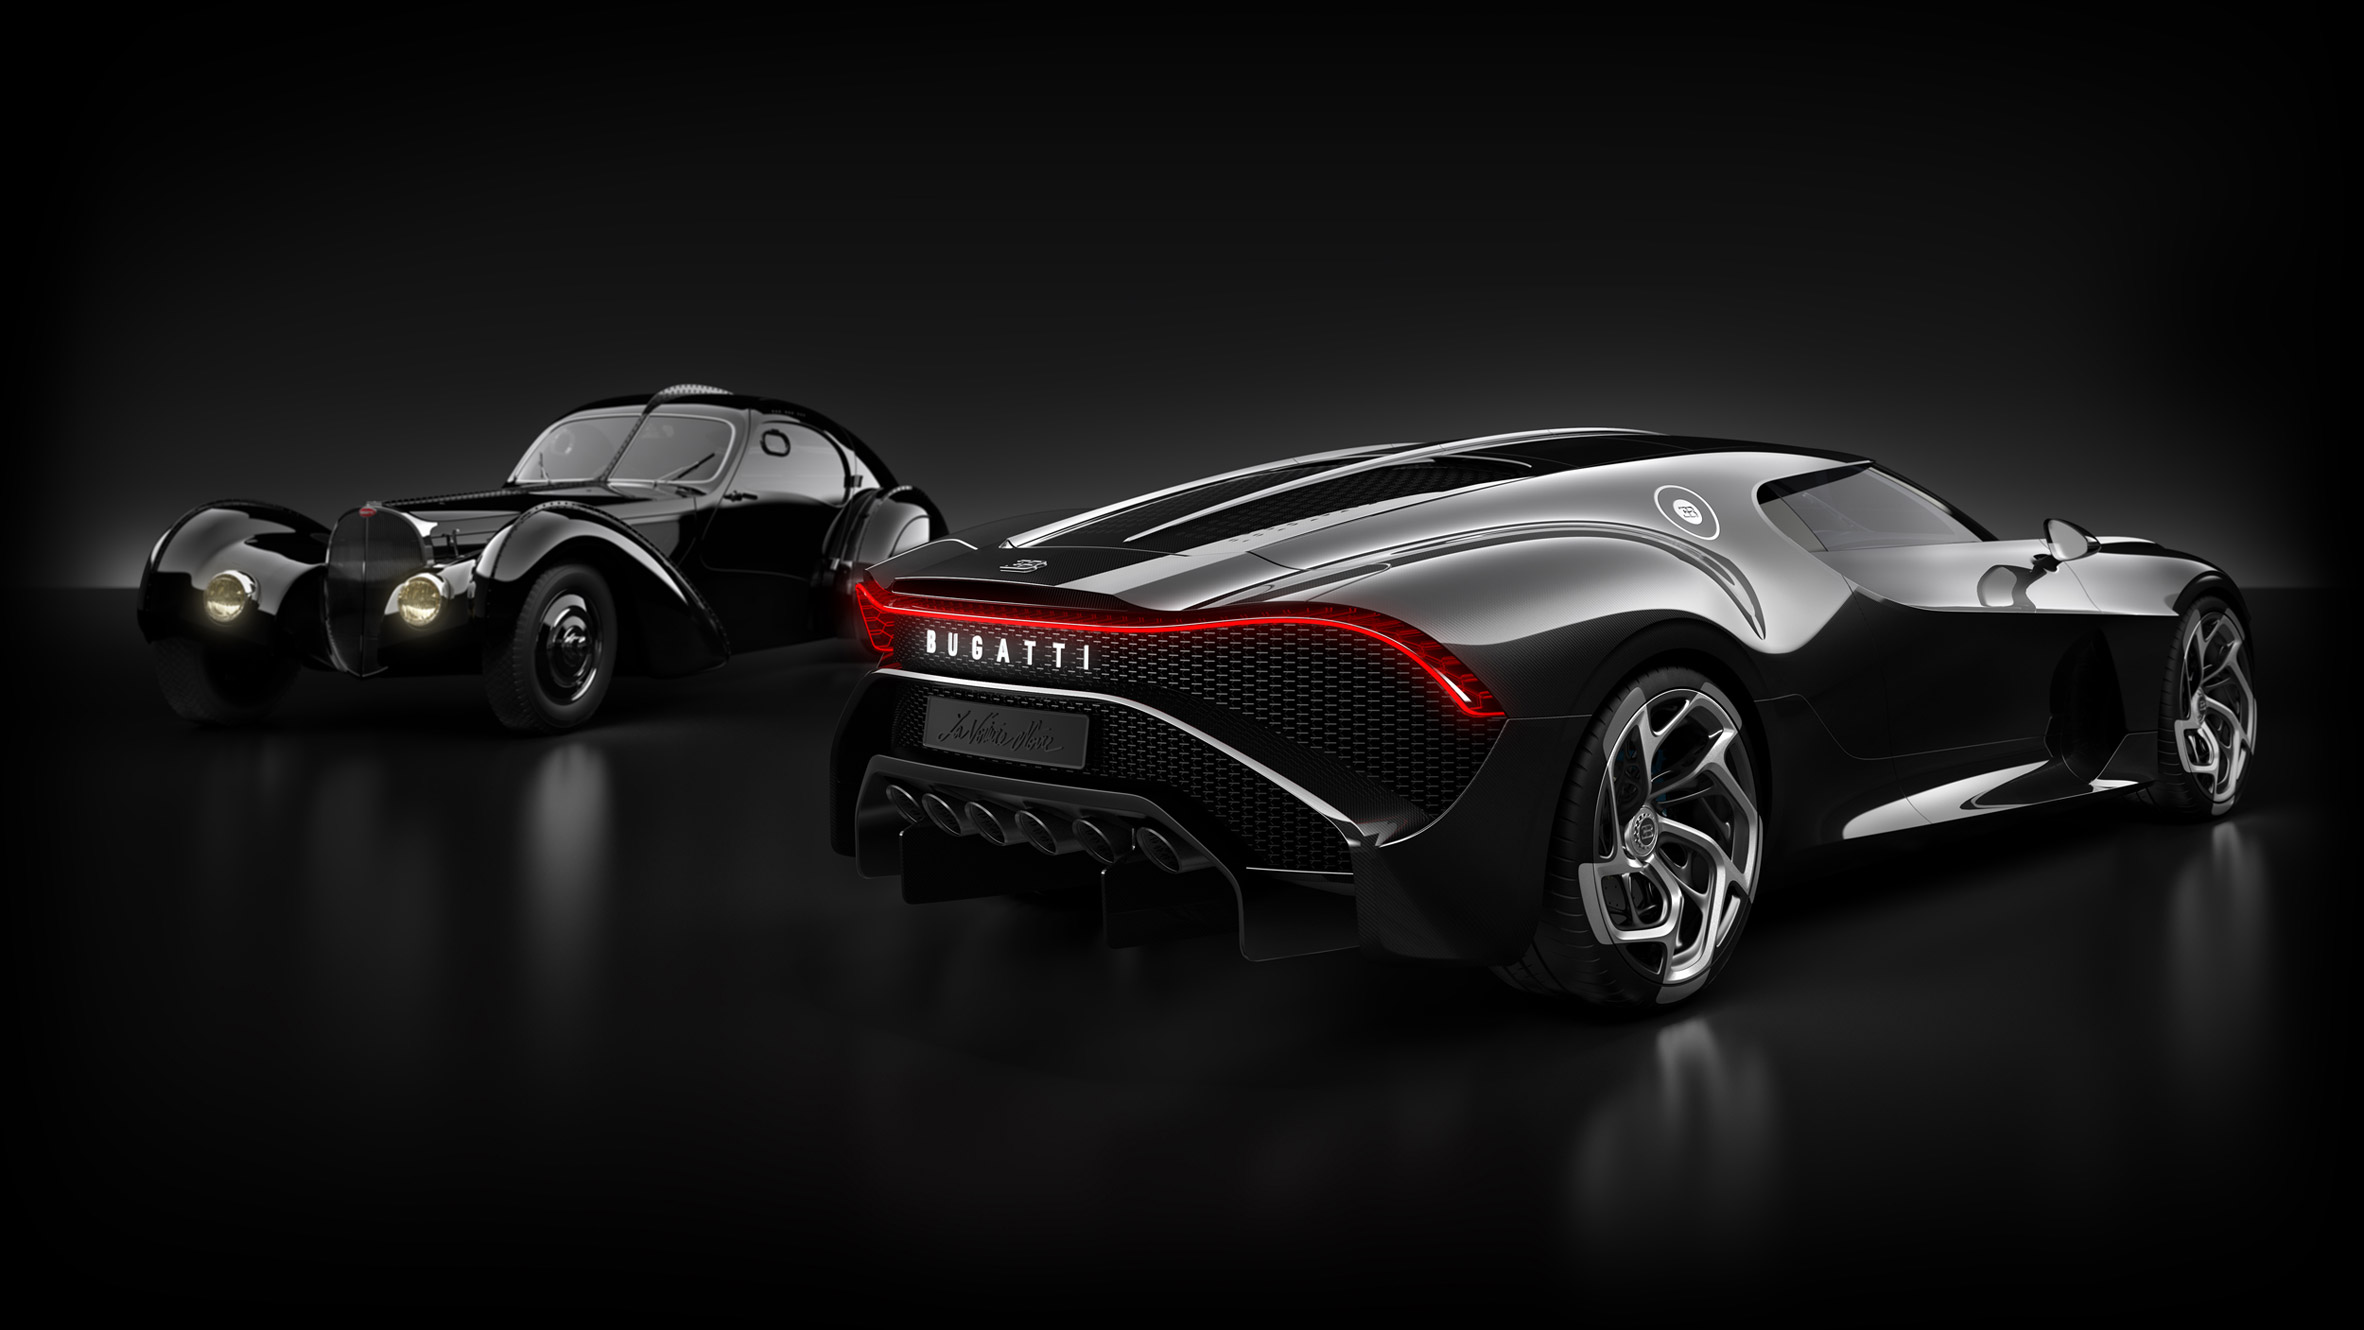 Bugatti's €11 million La Voiture Noire is the "world's most expensive car"